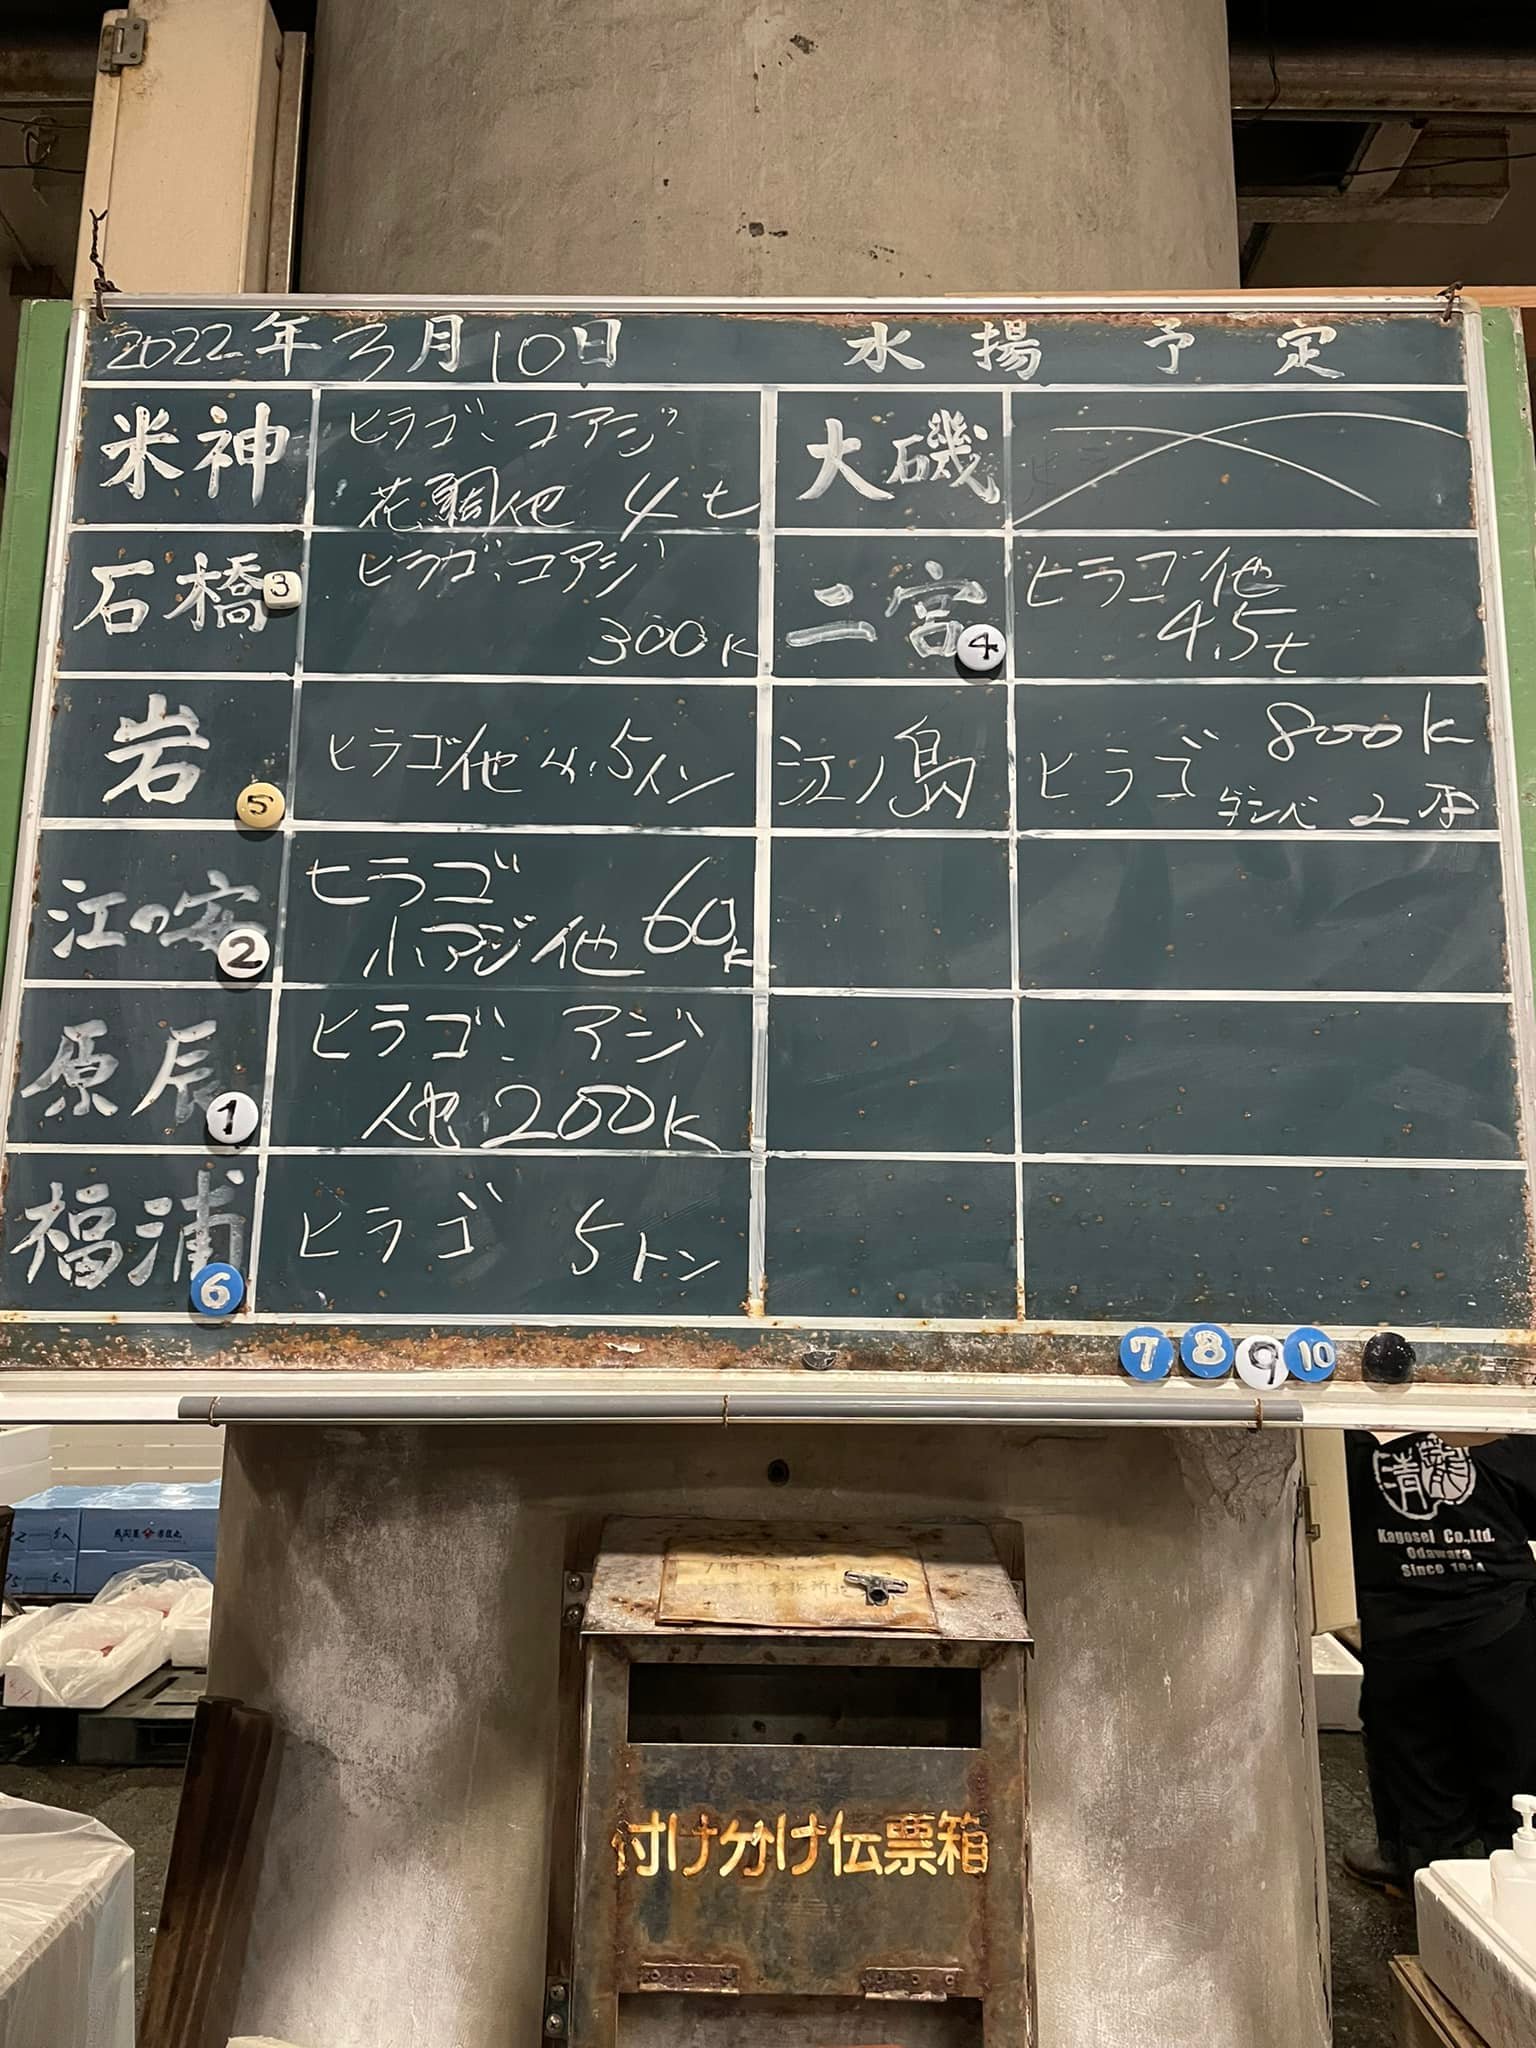 2022/3/10 小田原漁港 水揚げ情報